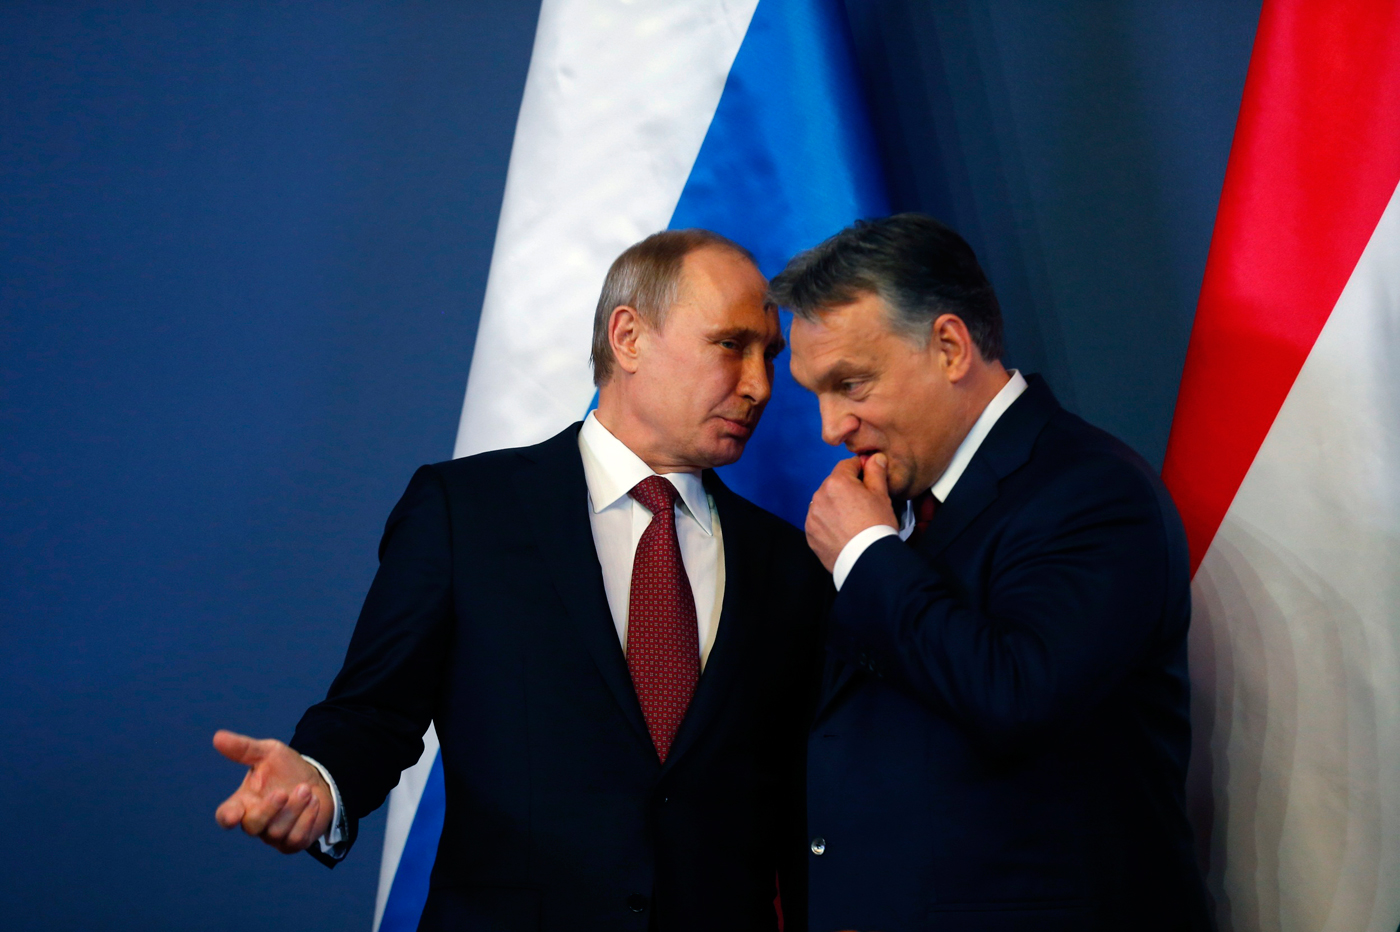 "Венгрия помогает геополитическим амбициям только одной страны - путинской России", - СМИ